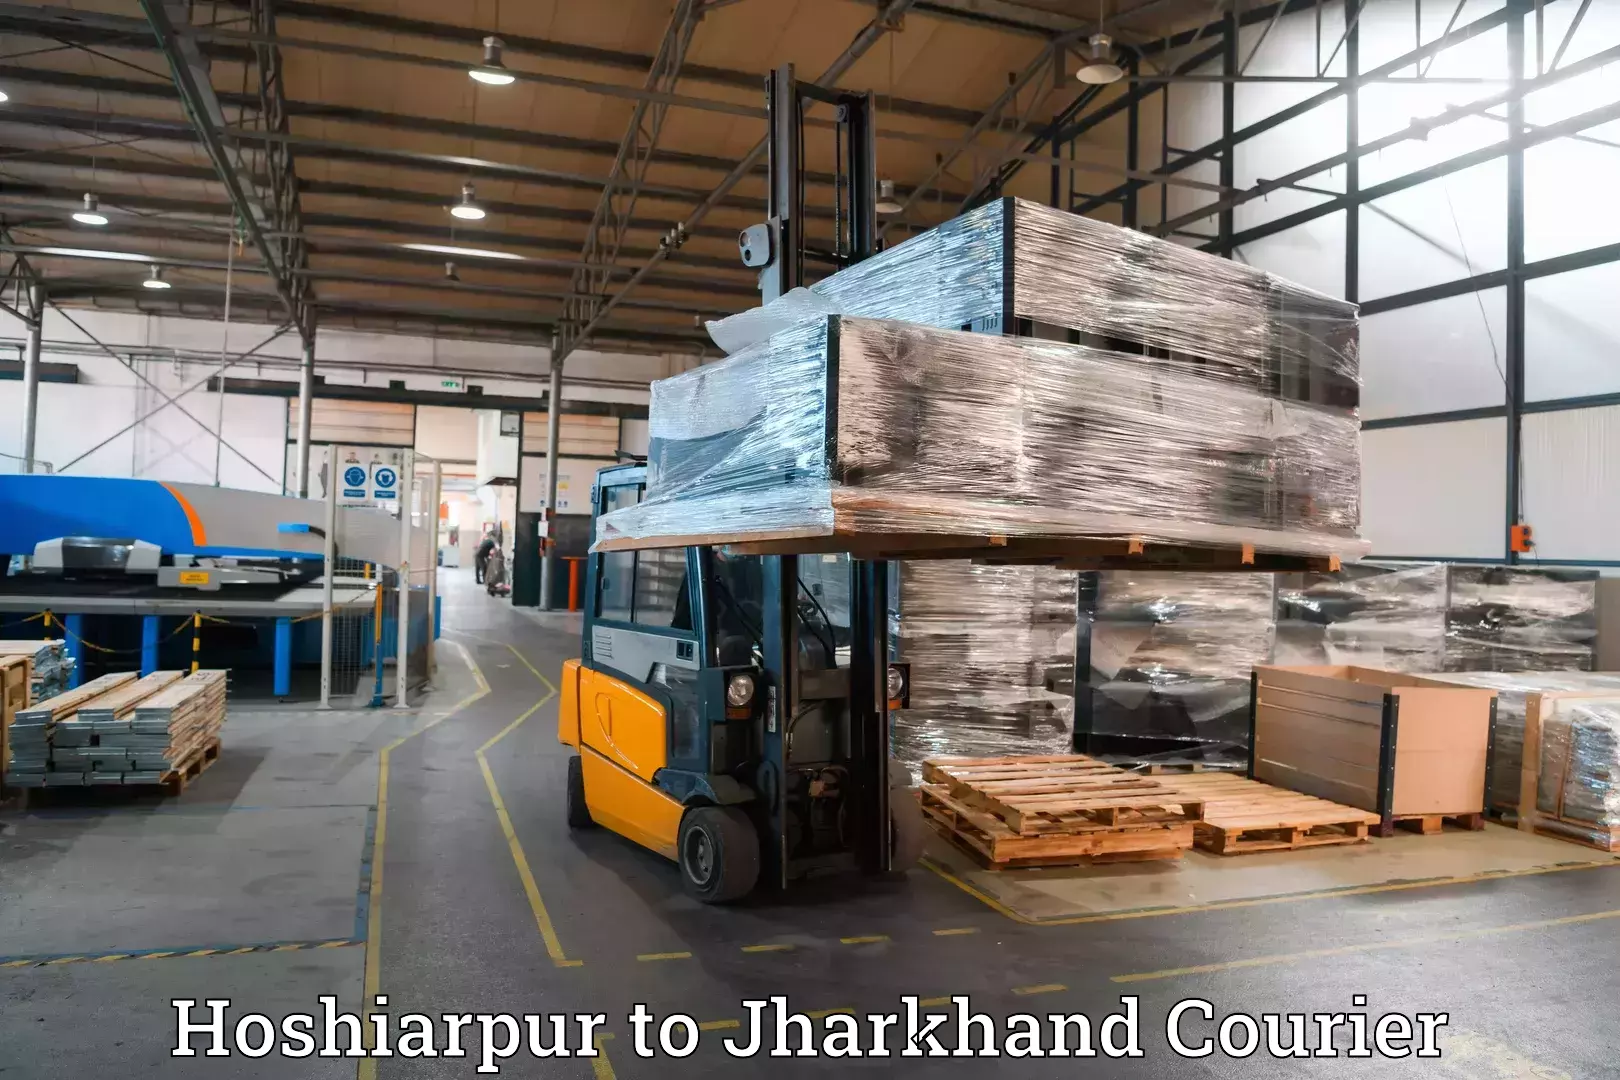 Luggage transport company Hoshiarpur to Daltonganj